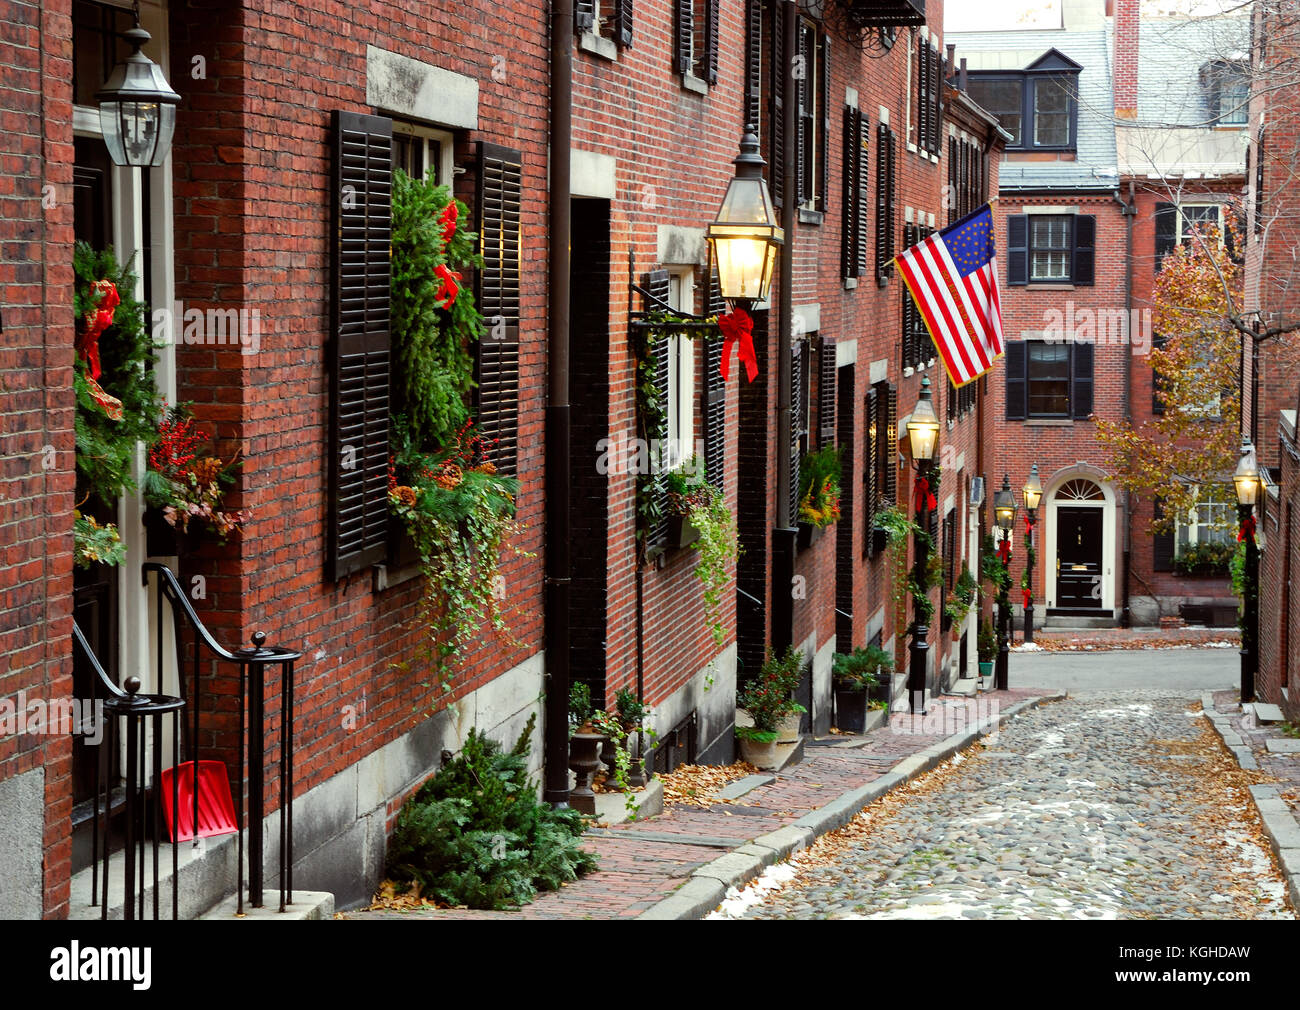 La rue acorn historique dans la région de Beacon Hill, Boston. décorations de Noël, drapeau américain historique, pavés de galets, un lampadaire. Banque D'Images